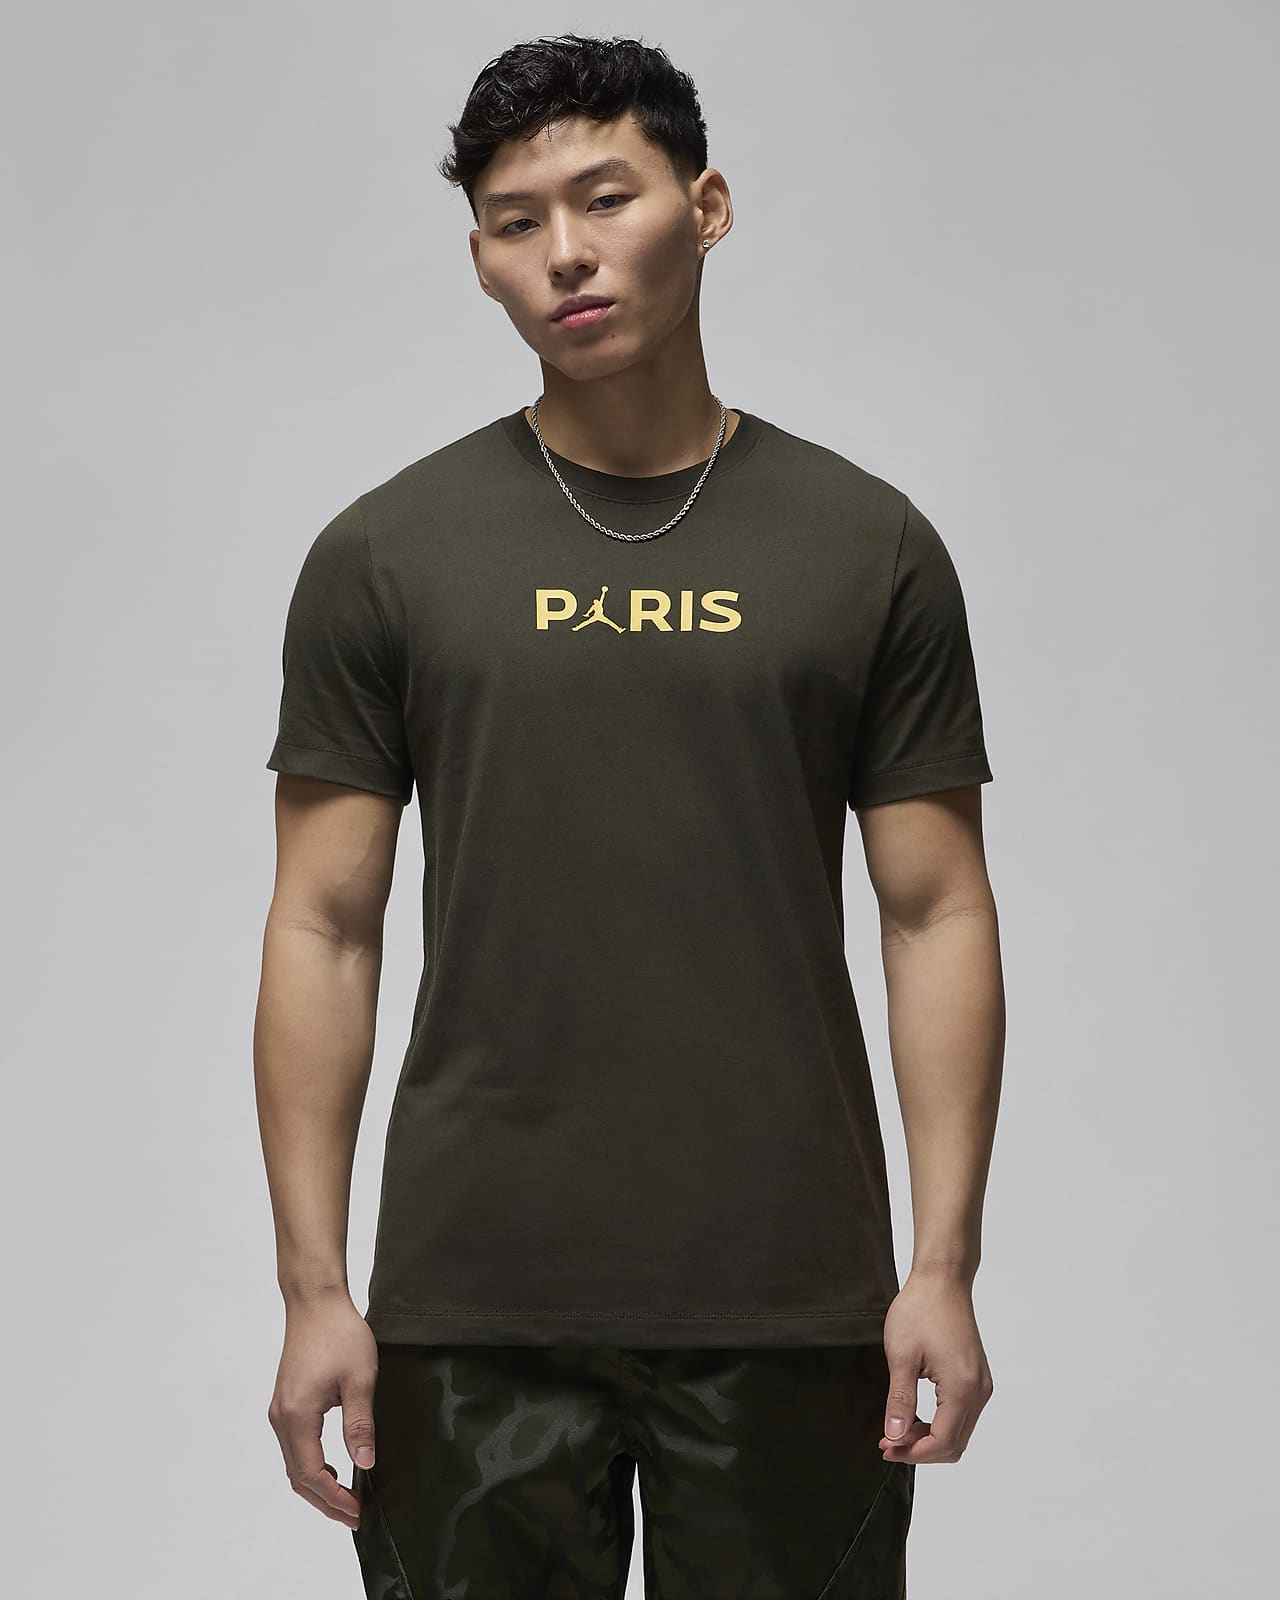 NIKE公式】パリ サンジェルマン (PSG) メンズ Tシャツ.オンライン